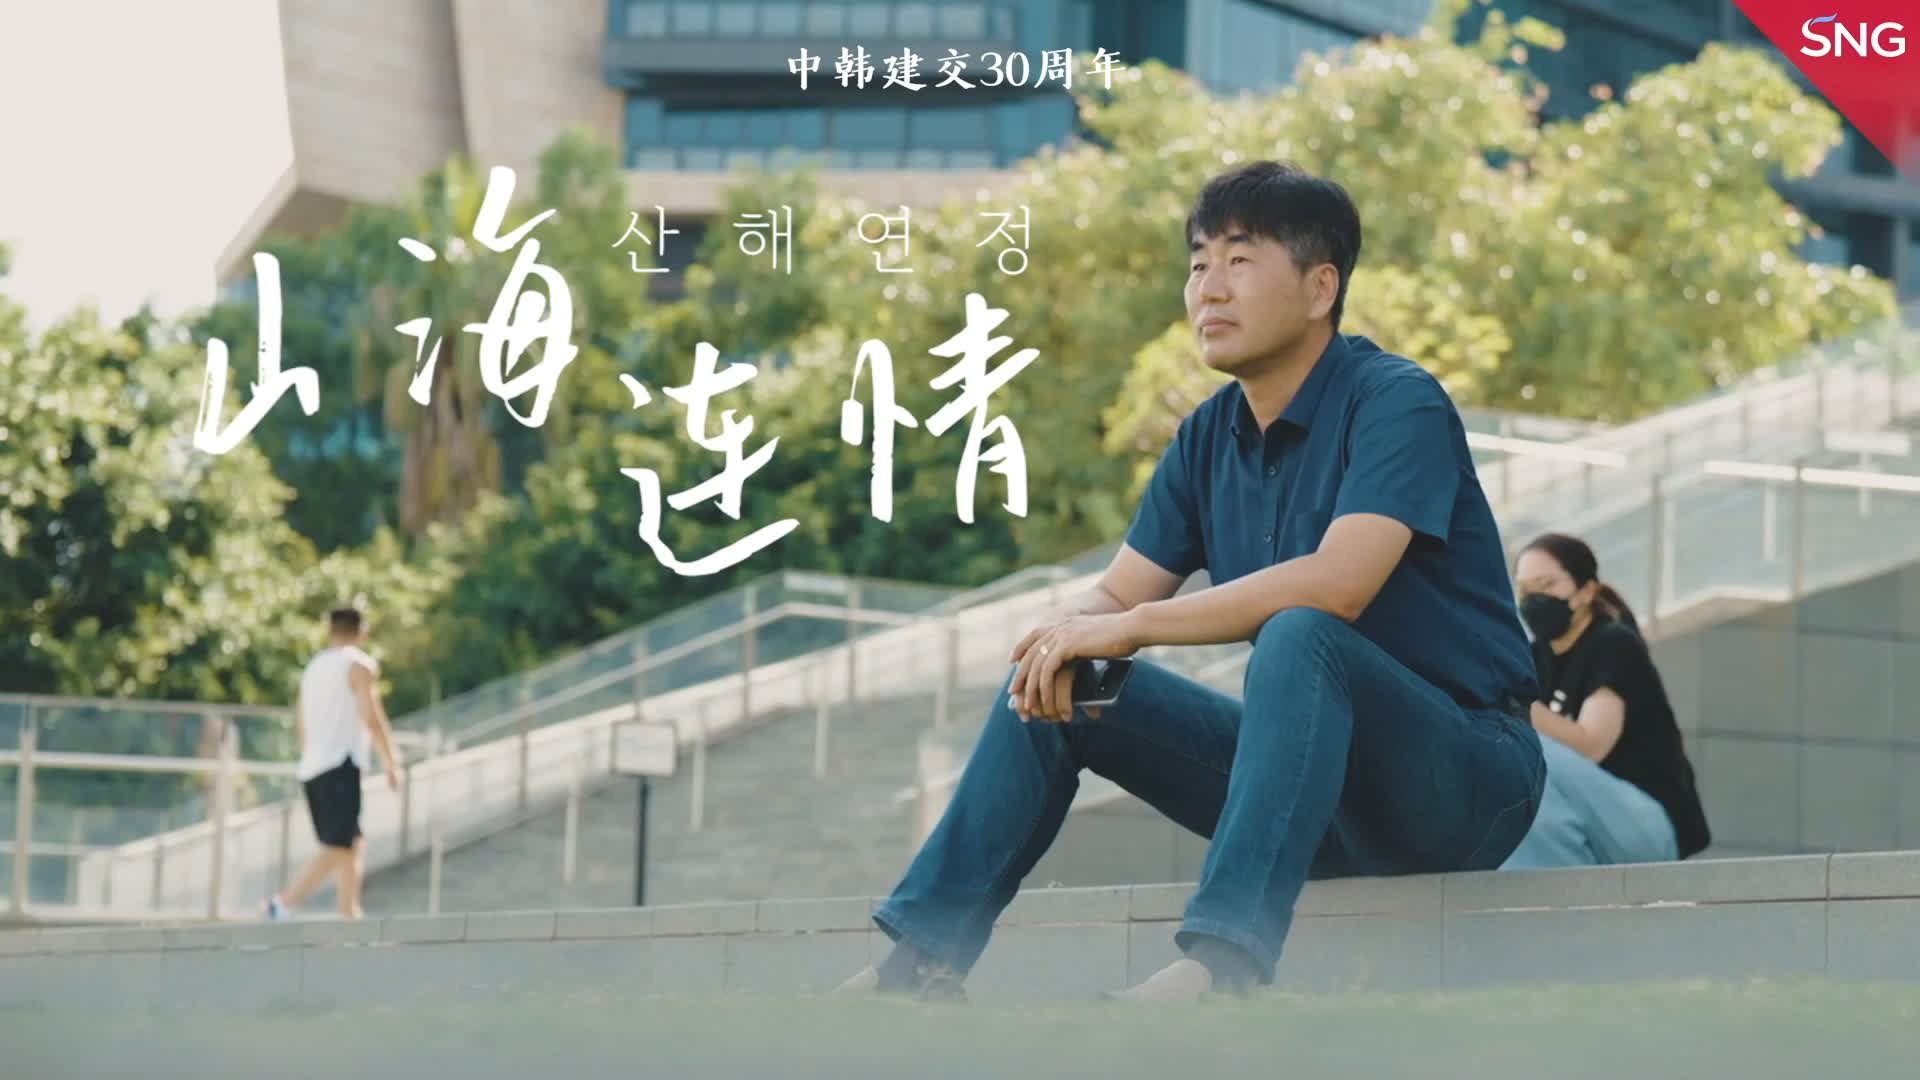 有片 | 《山海連城中韓連情——紀念中韓建交30周年》